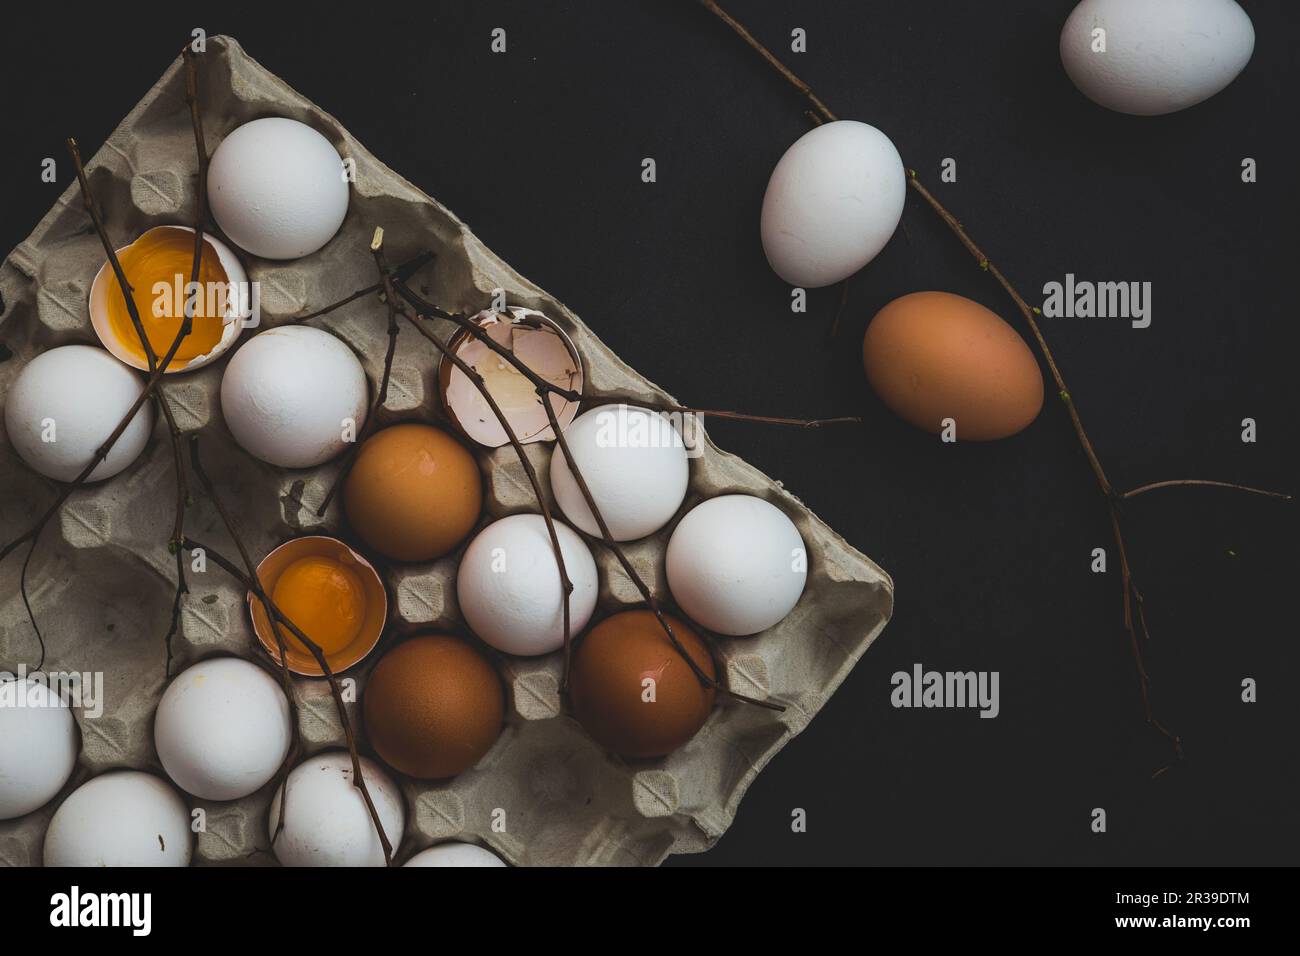 Una scatola di uova con uova di gallina bianche e marroni, intere e spaccate Foto Stock